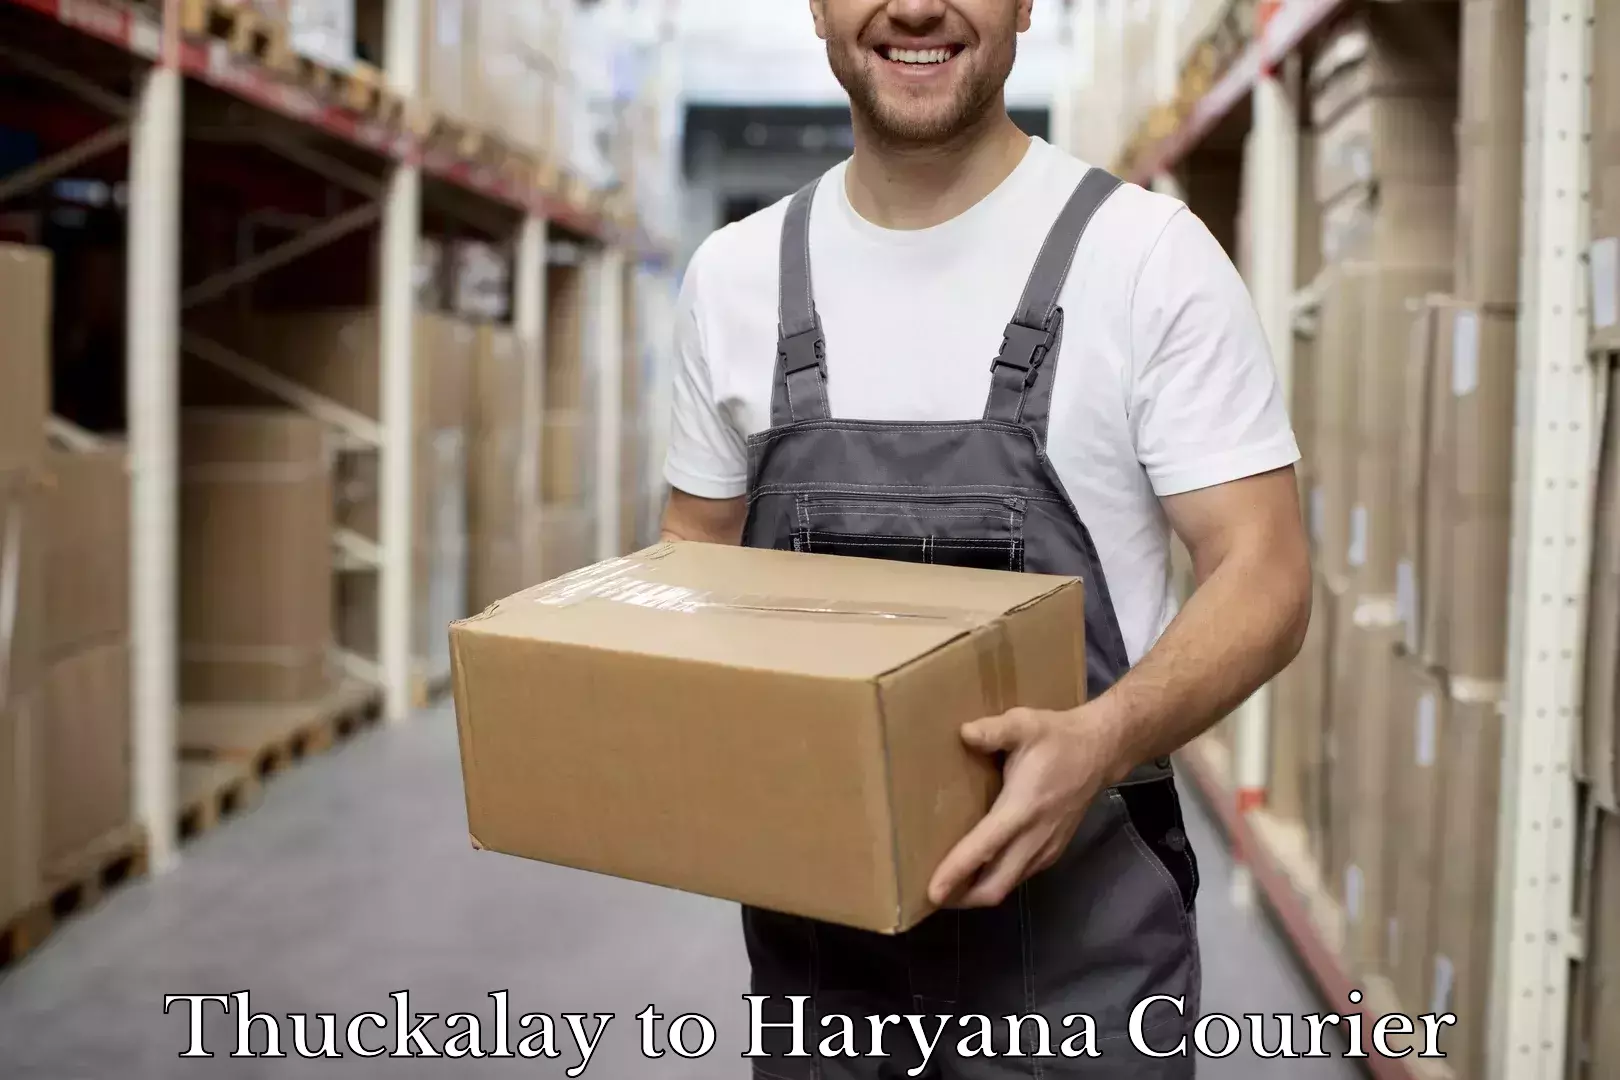 Luggage shipment specialists Thuckalay to Haryana